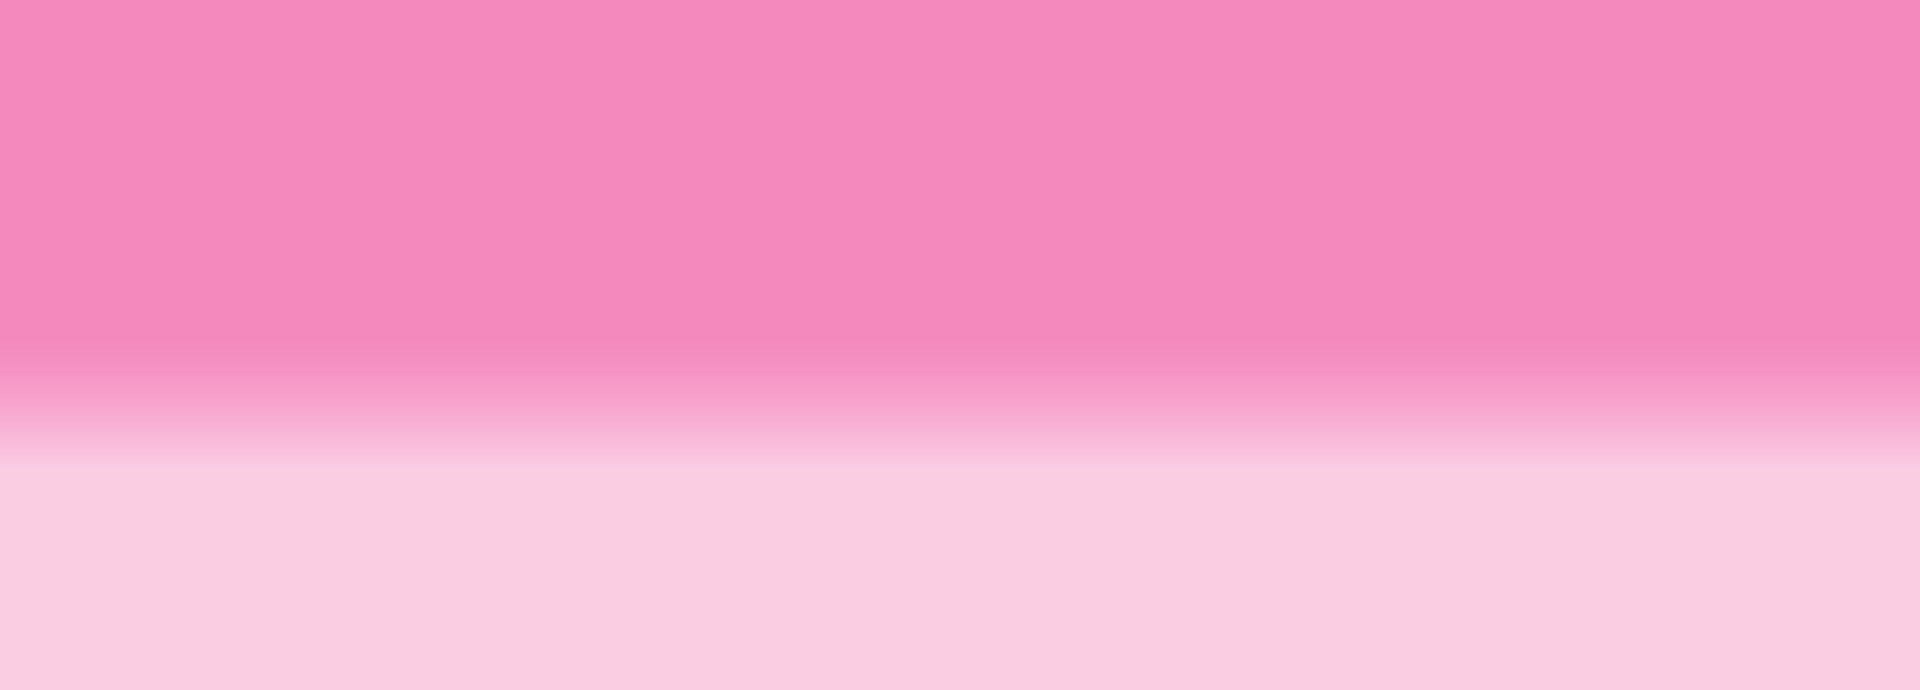 Pink background graphic gradient